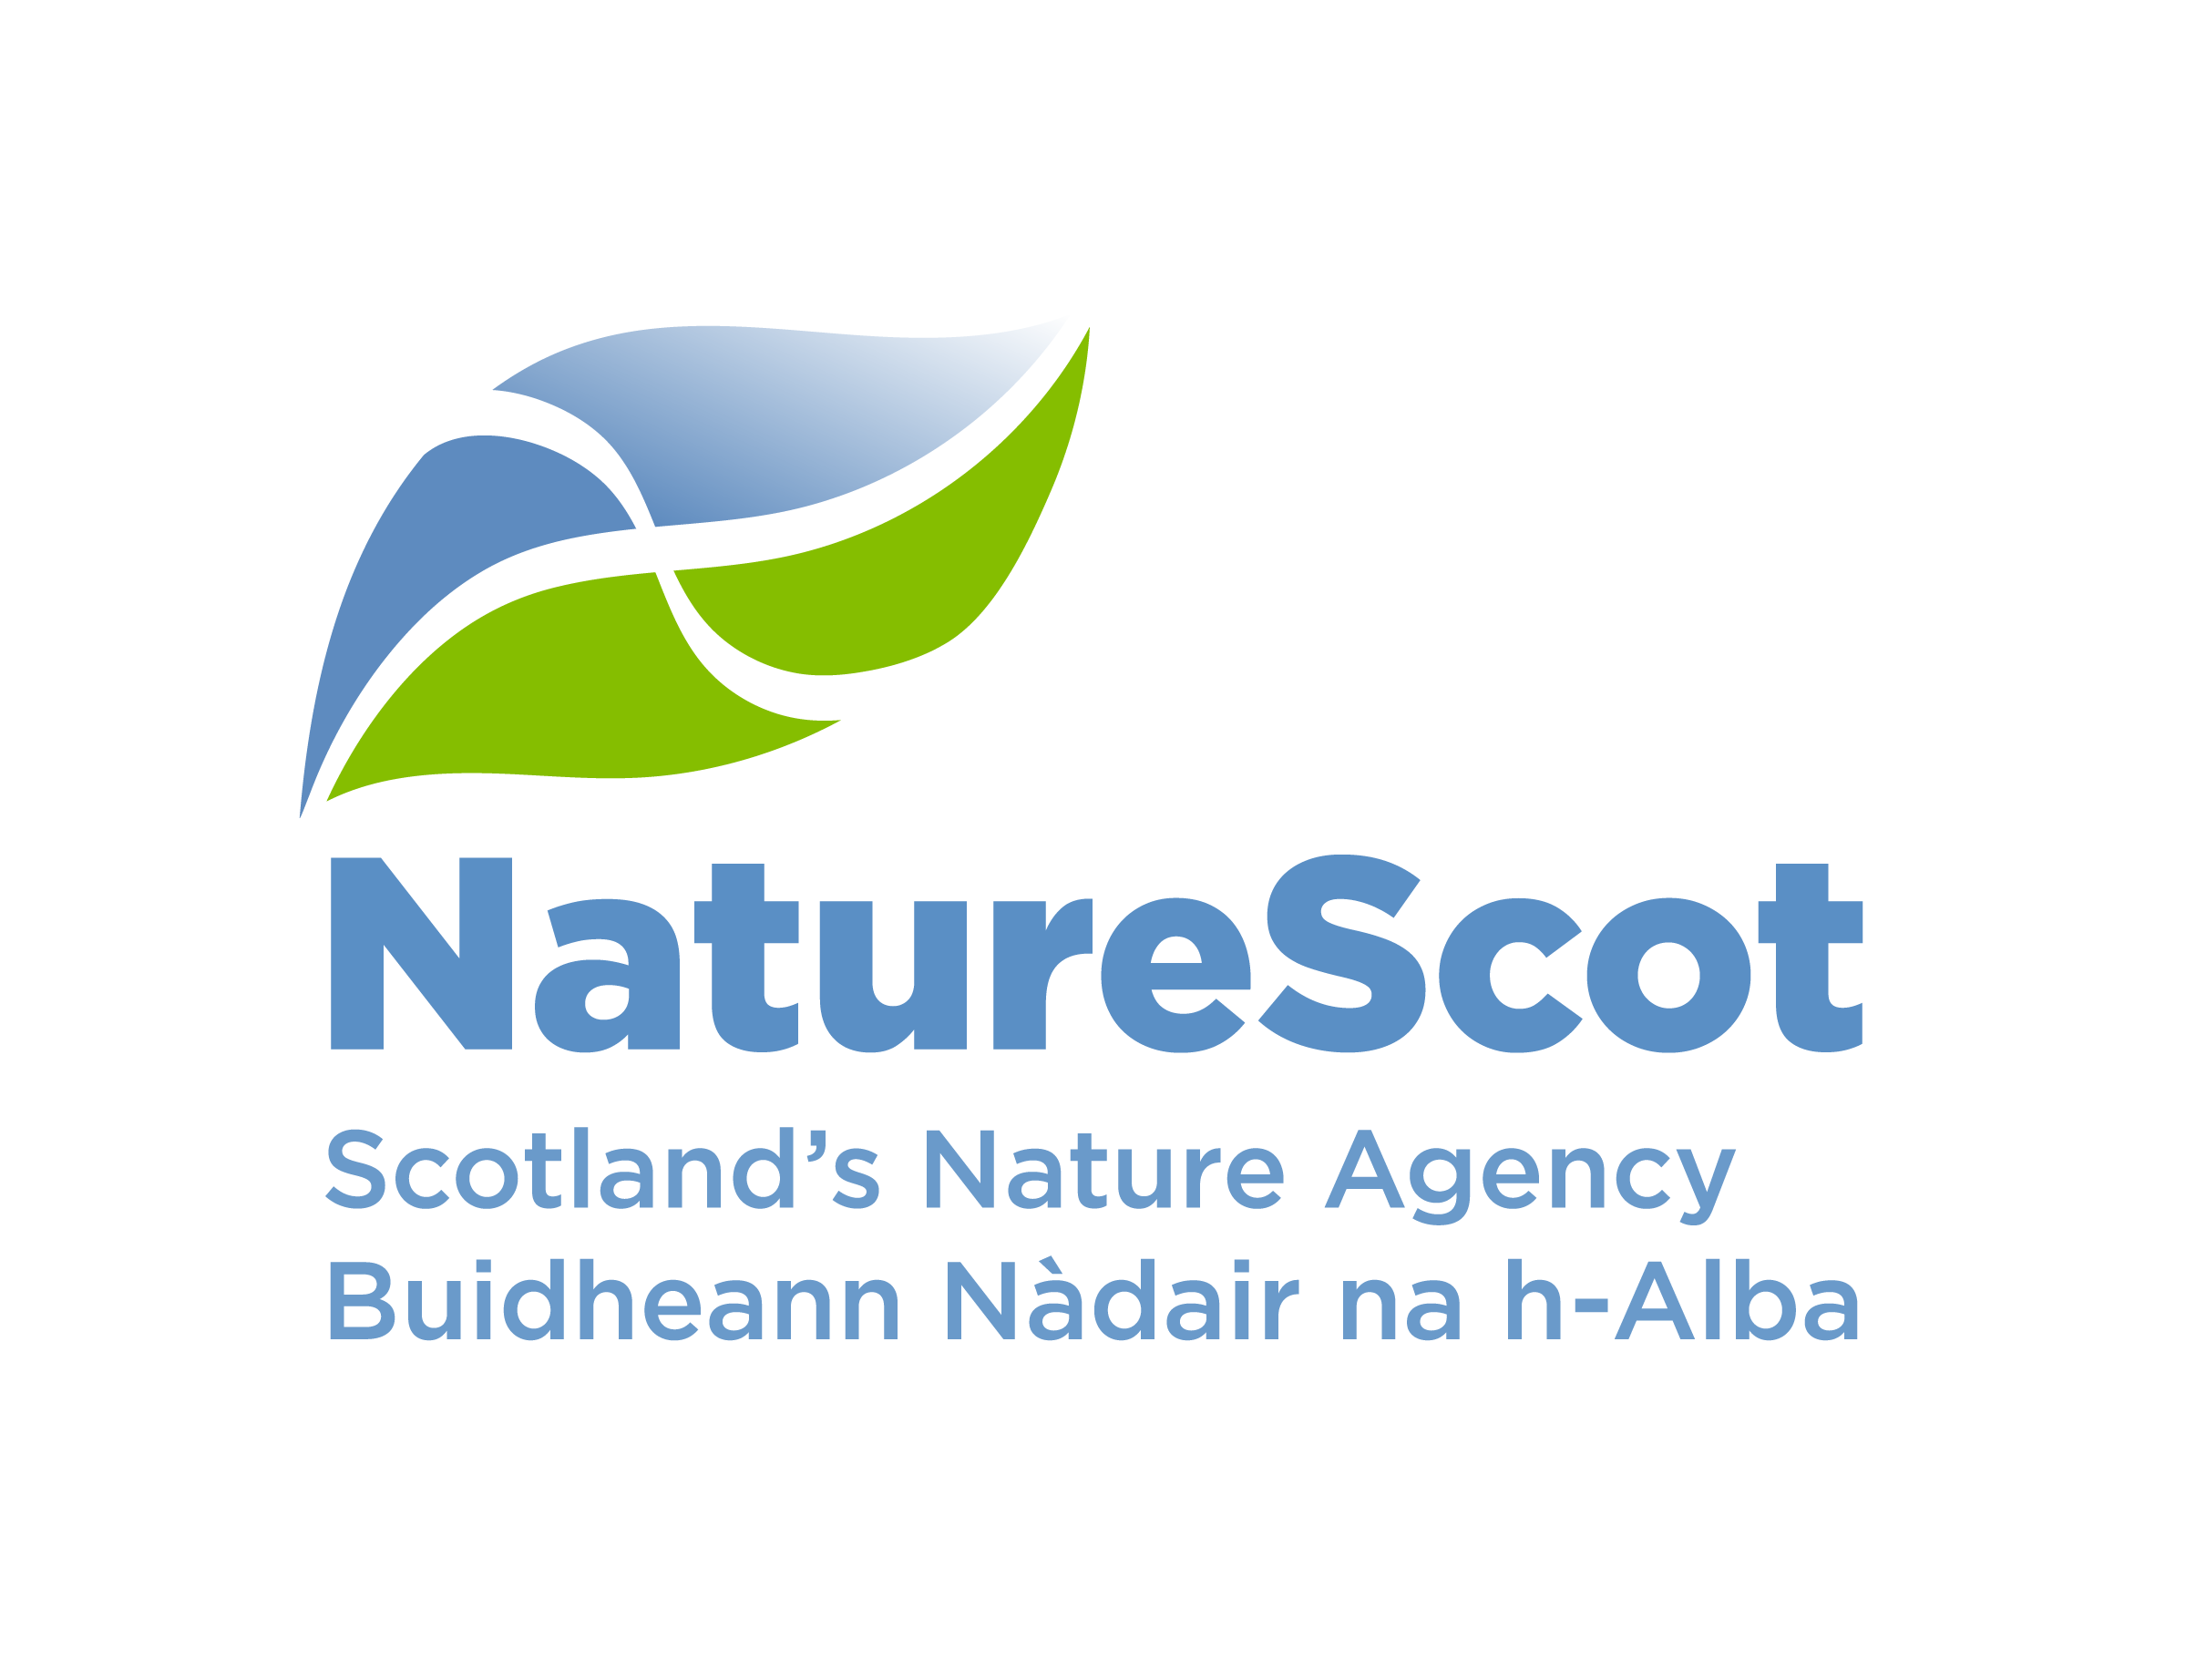 The NatureScot brand | NatureScot